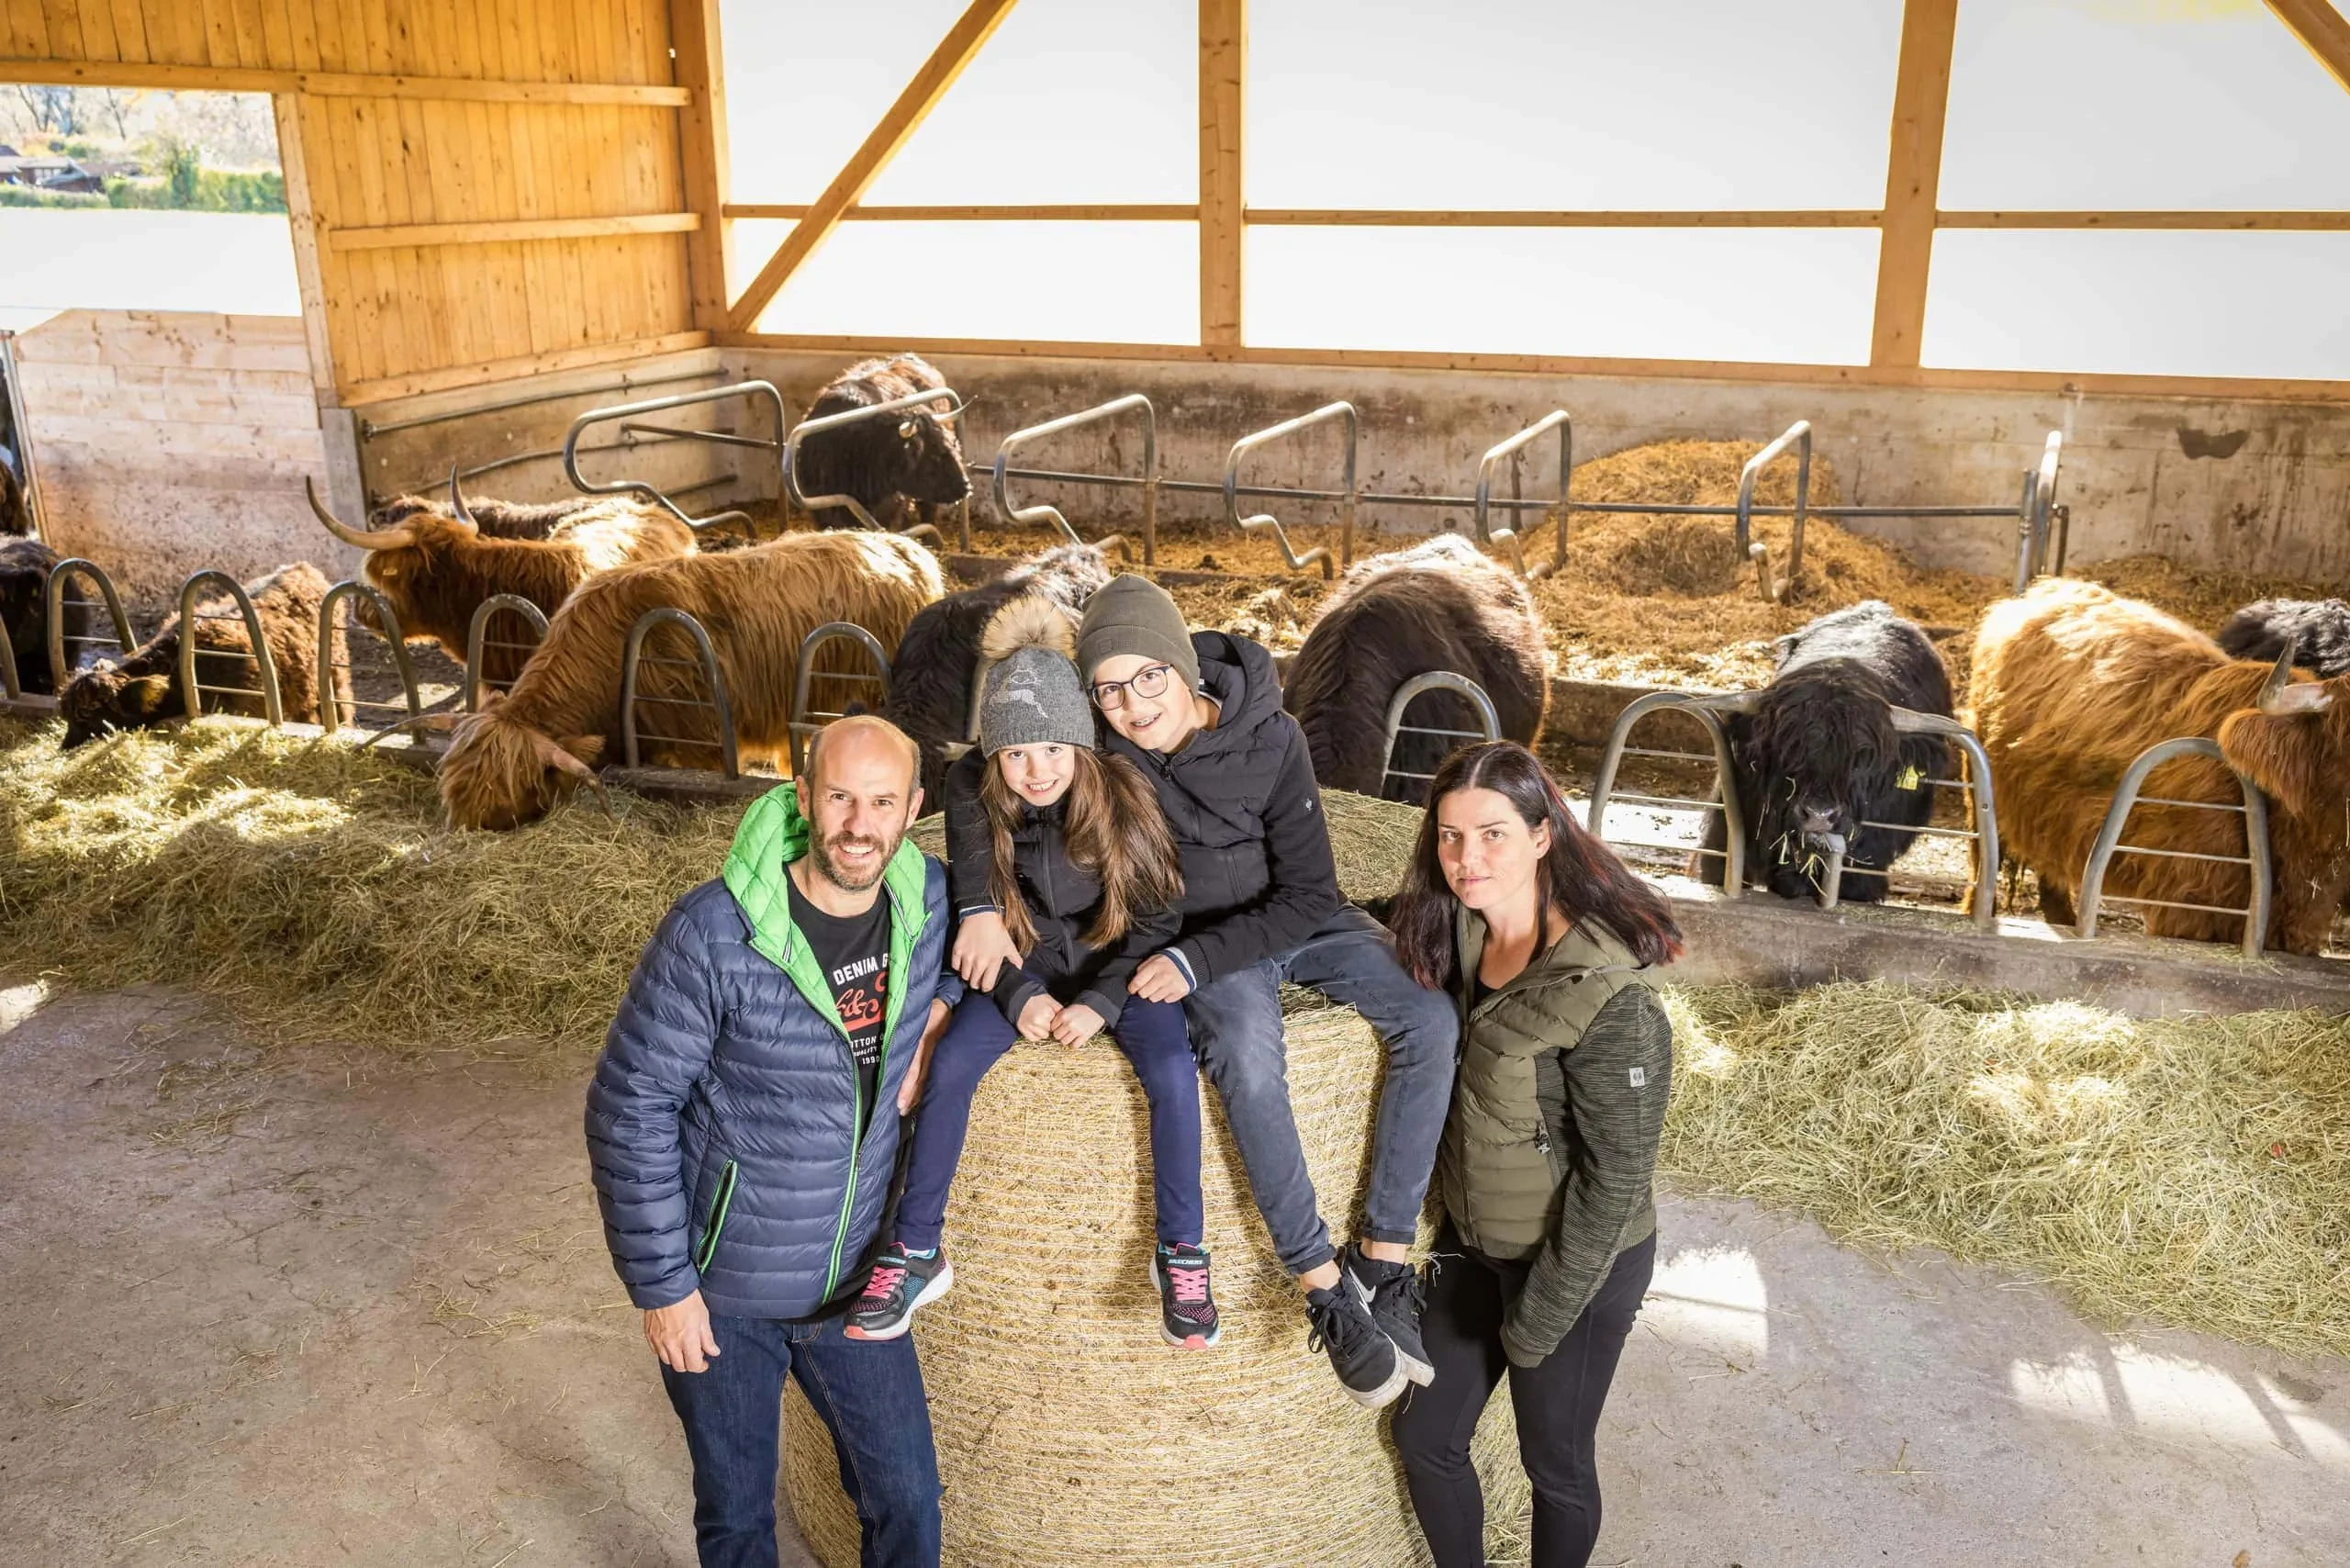 Familienbild mit Rinder